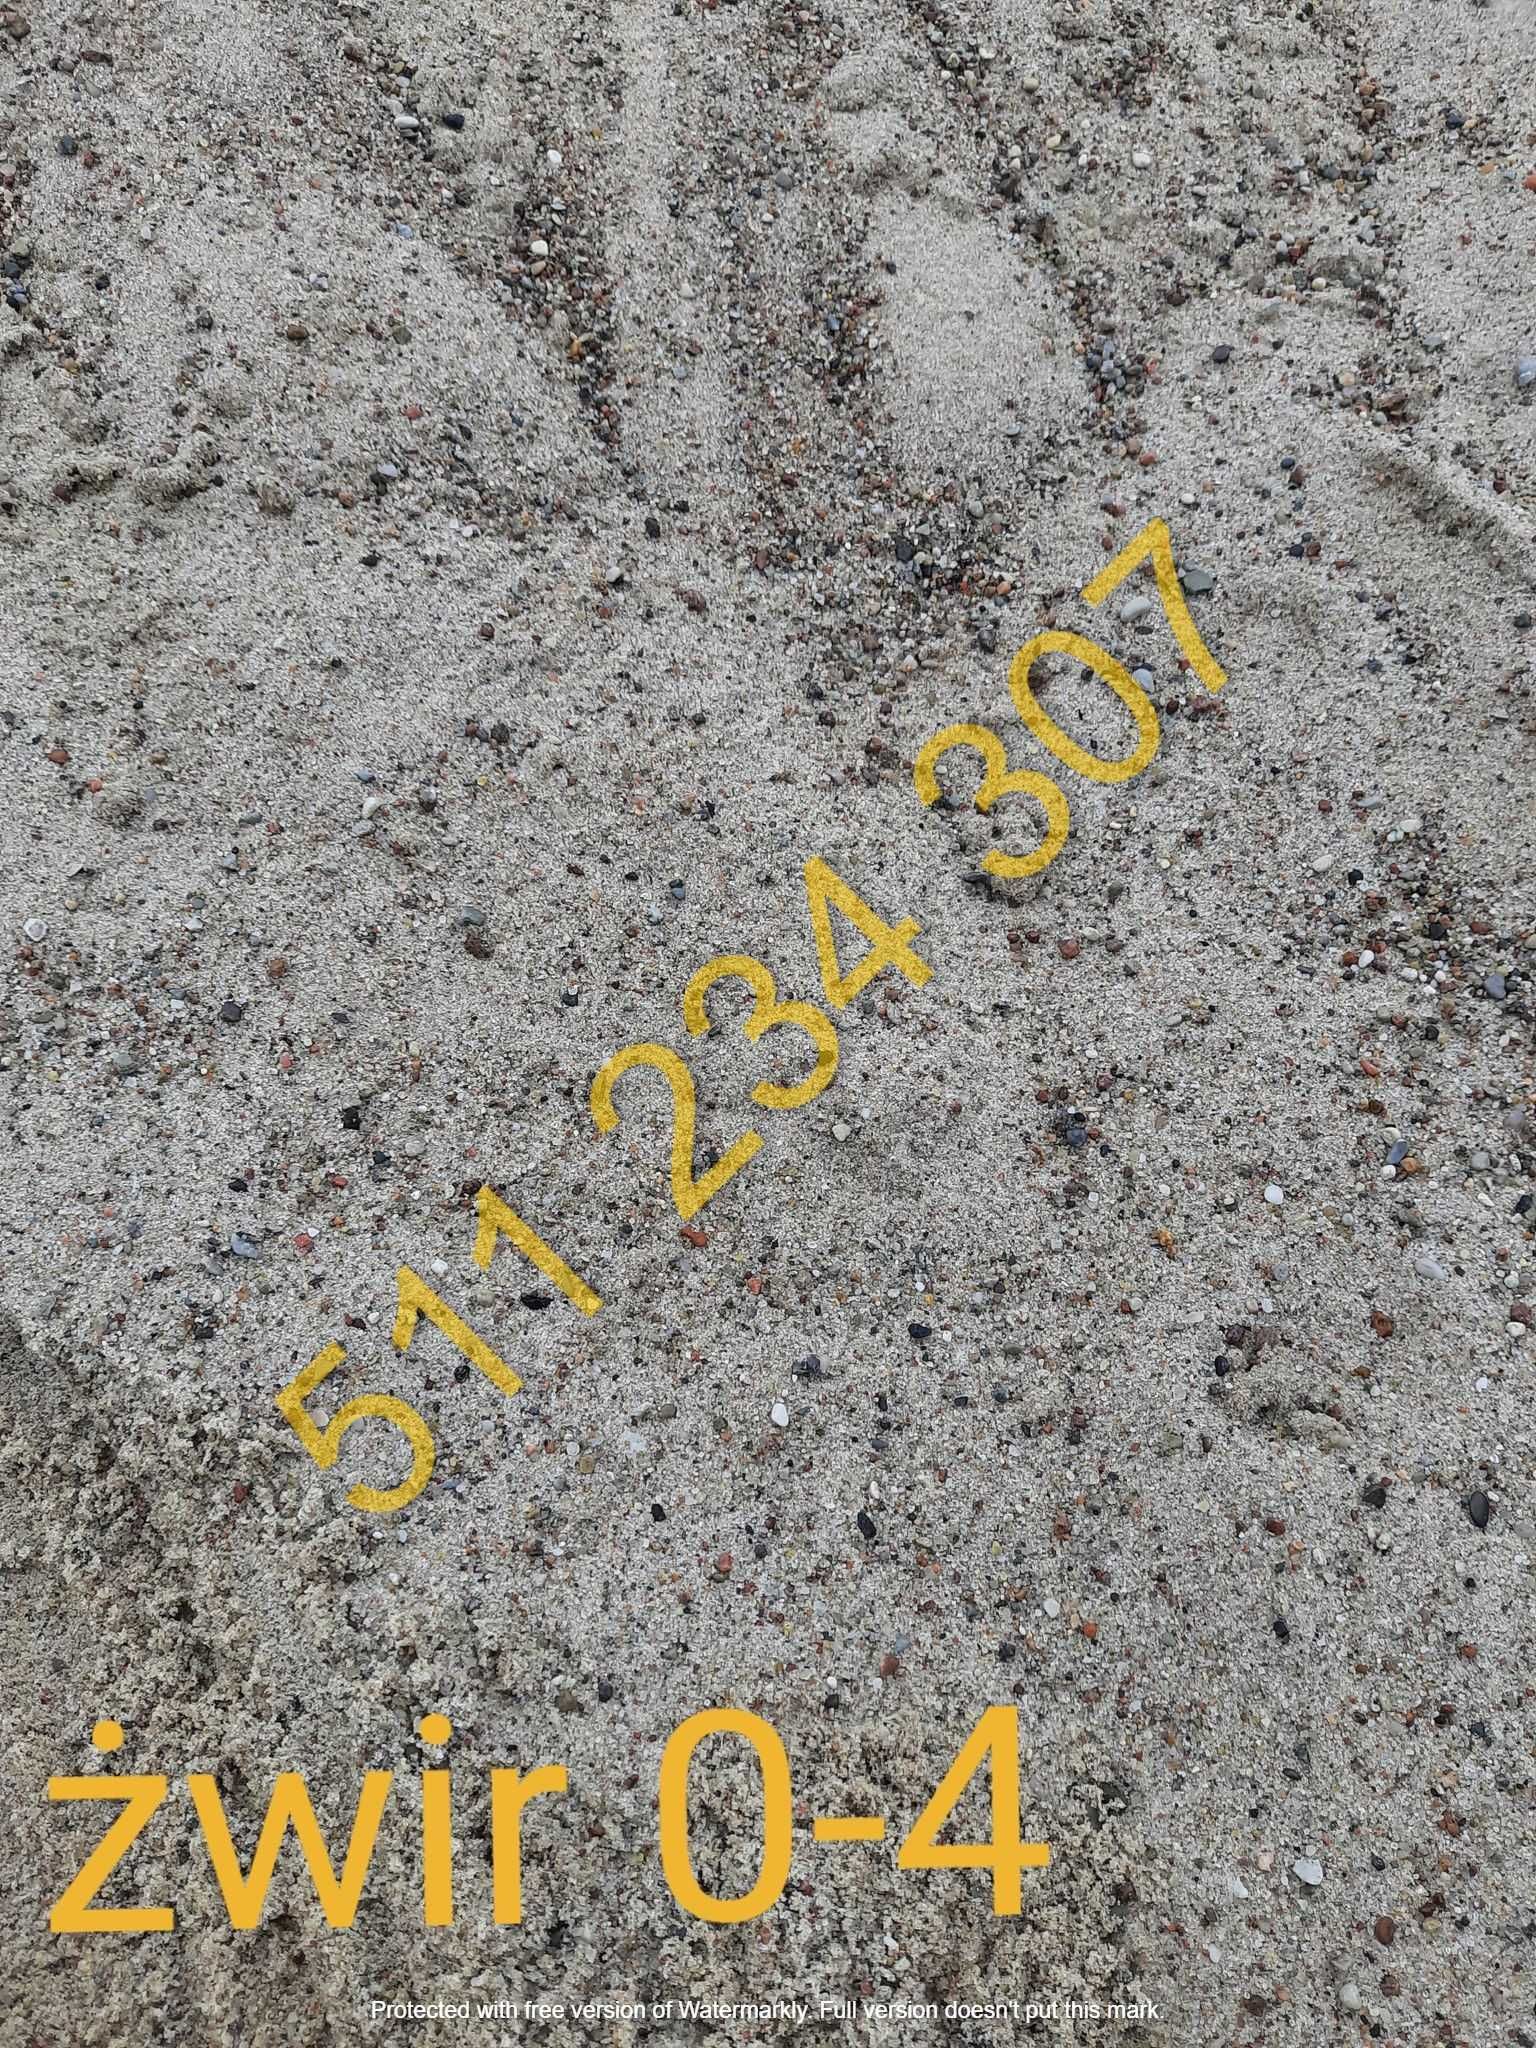 piasek ziemia żwir pospółka podsypka beton kamień granit gruz tłuczeń